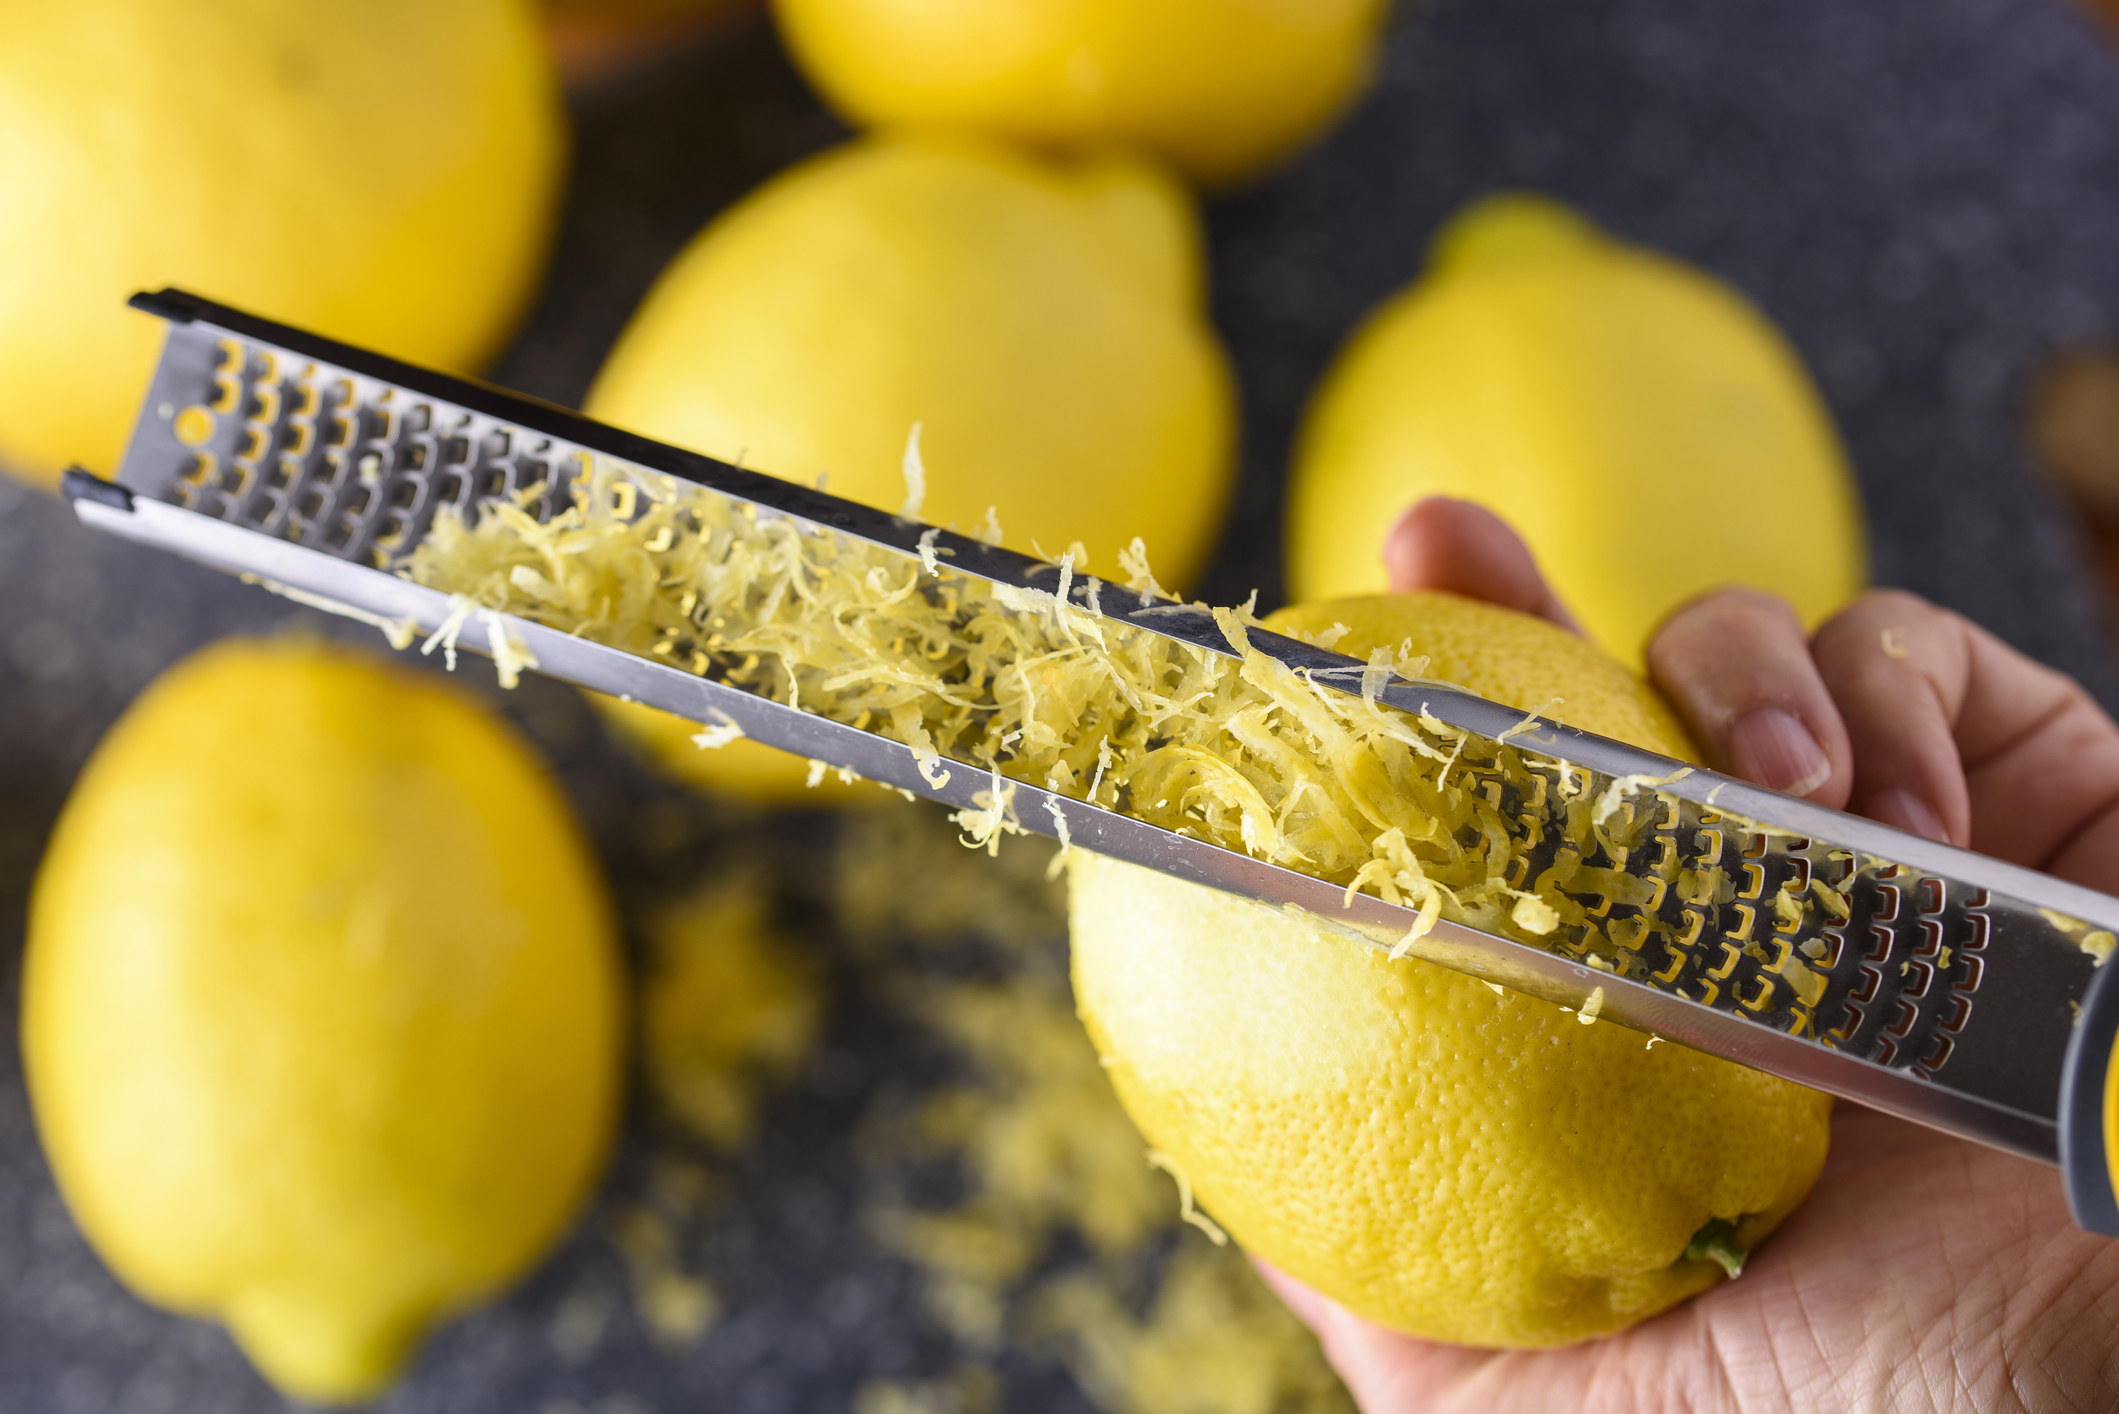 Hand zesting lemon.